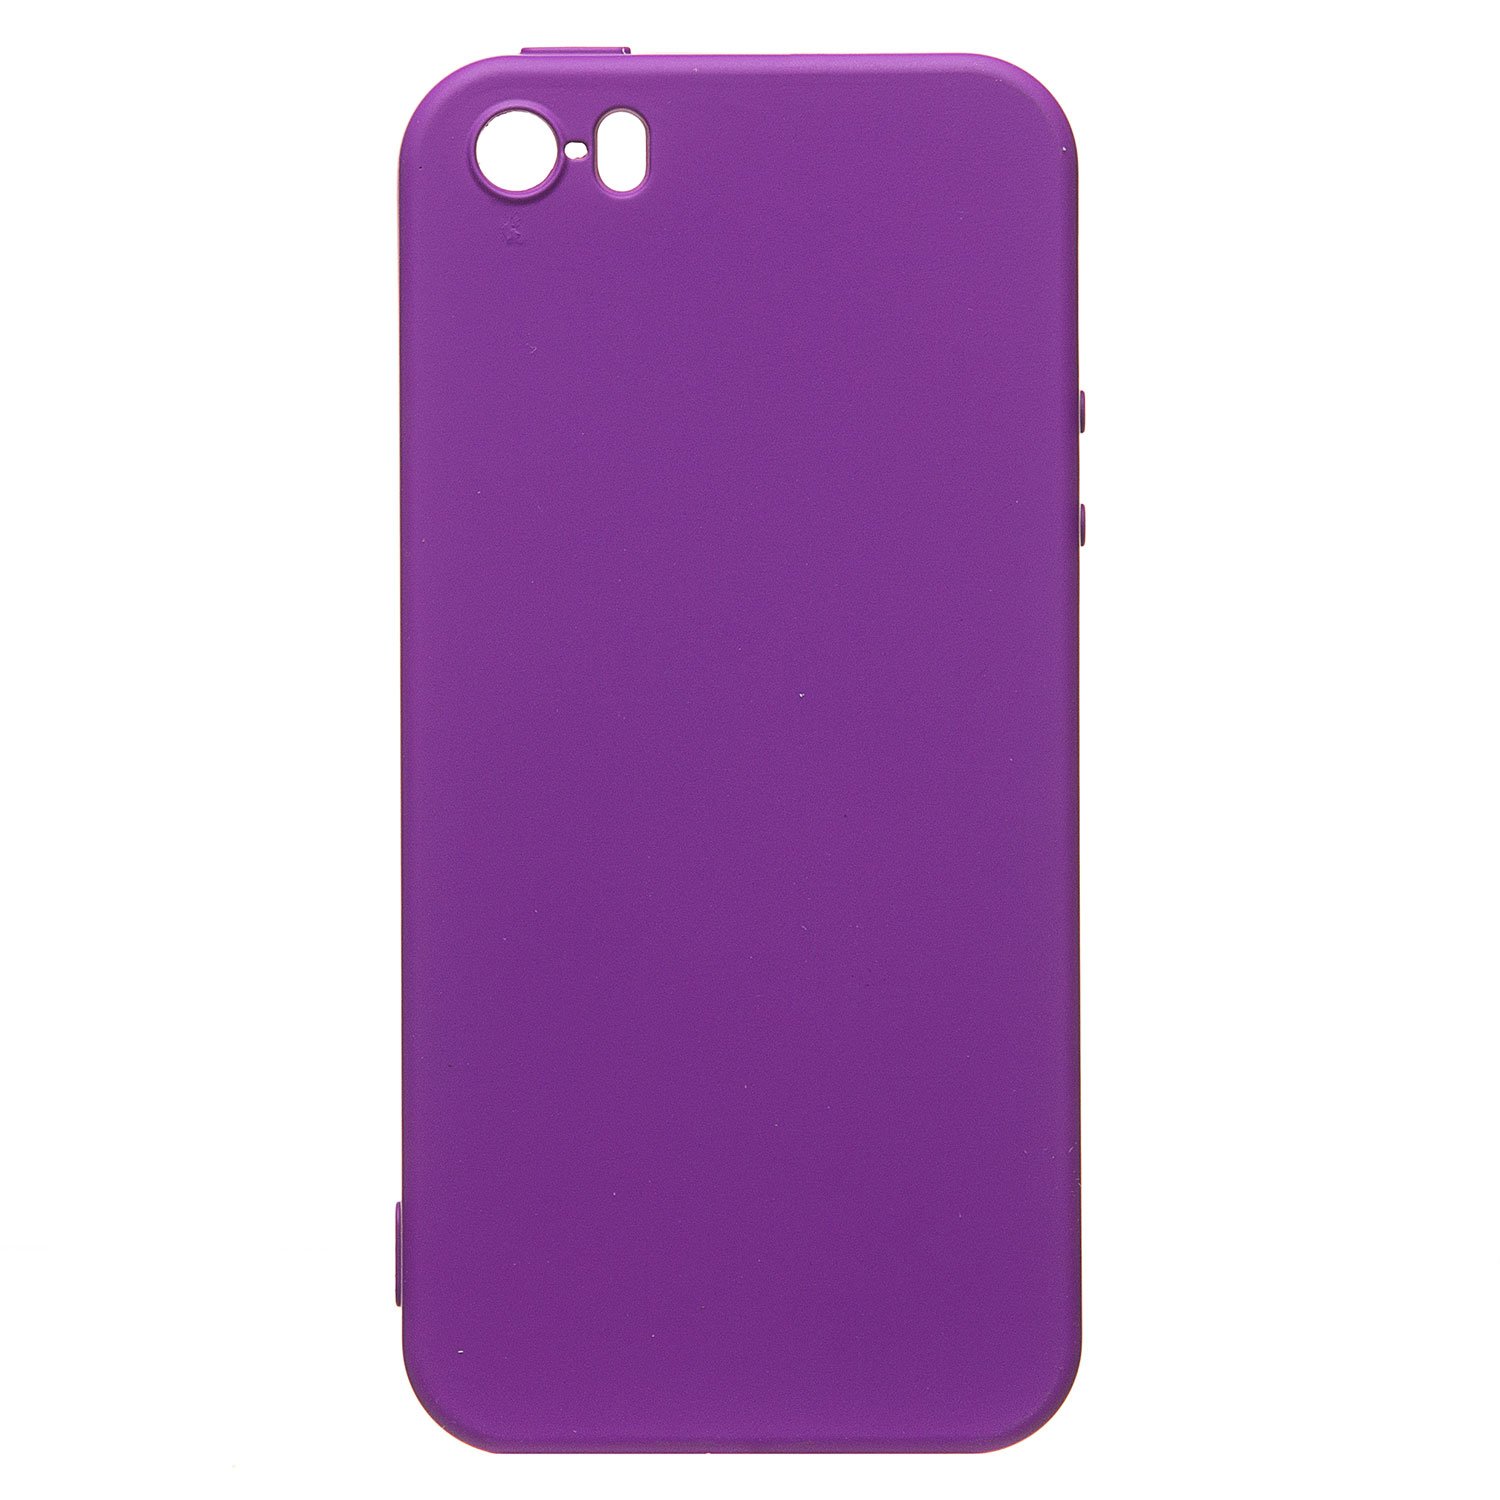 Чехол-накладка Activ Full Original Design для смартфона Apple iPhone 5/5s/SE, силикон, фиолетовый (221630)